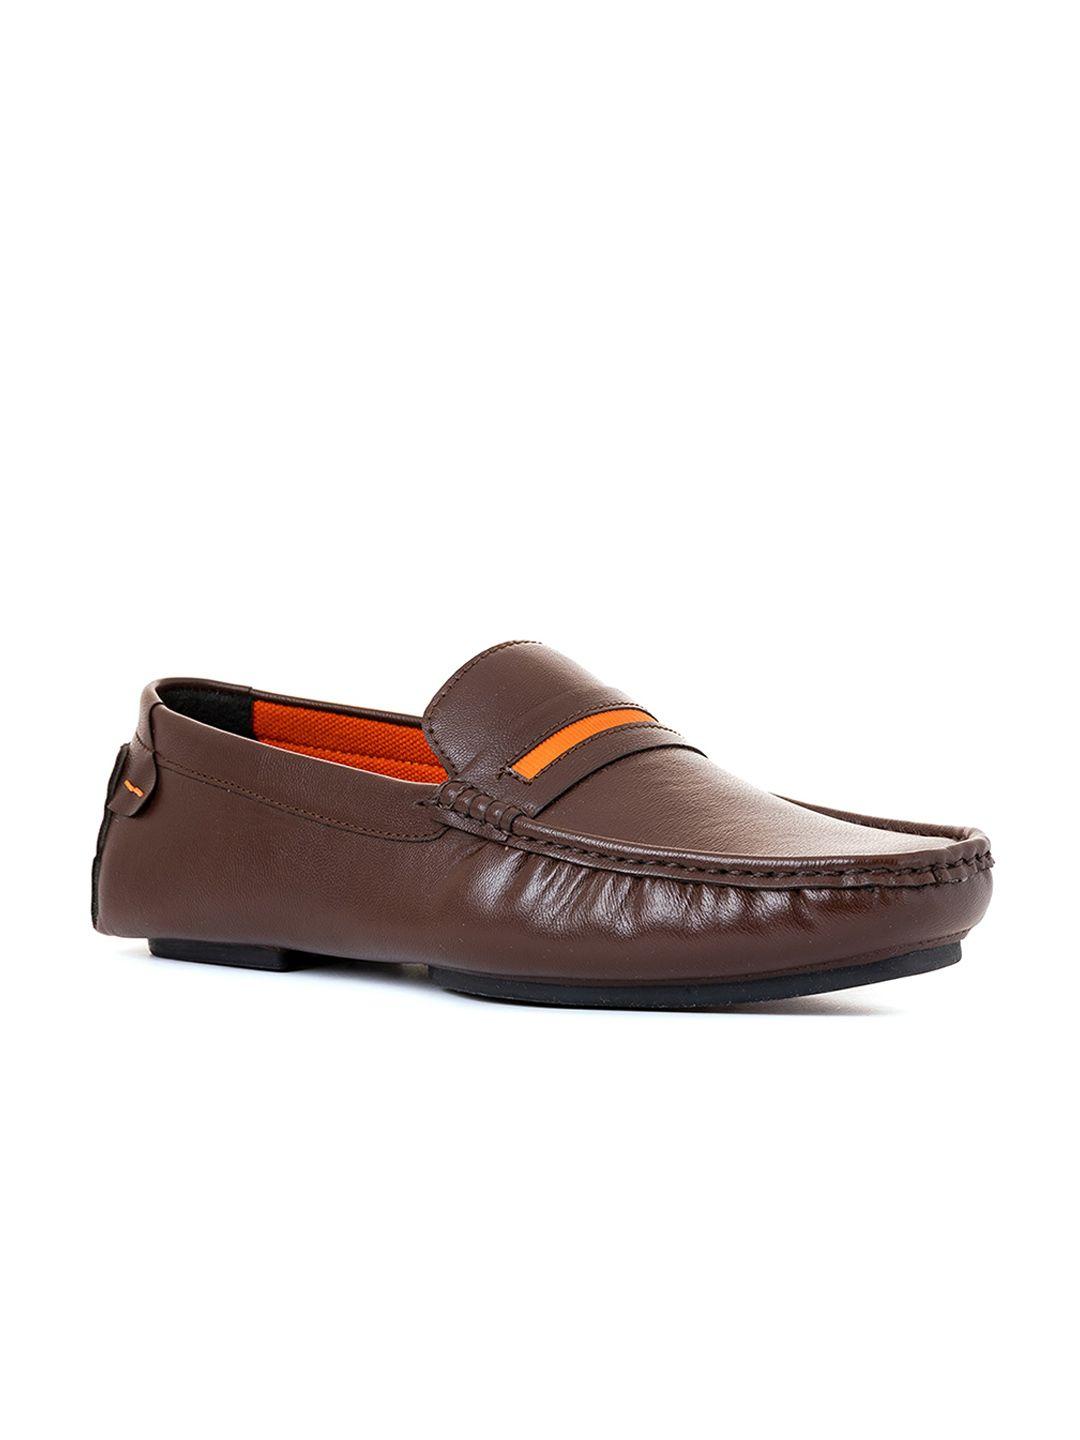 khadims-men-brown-loafers